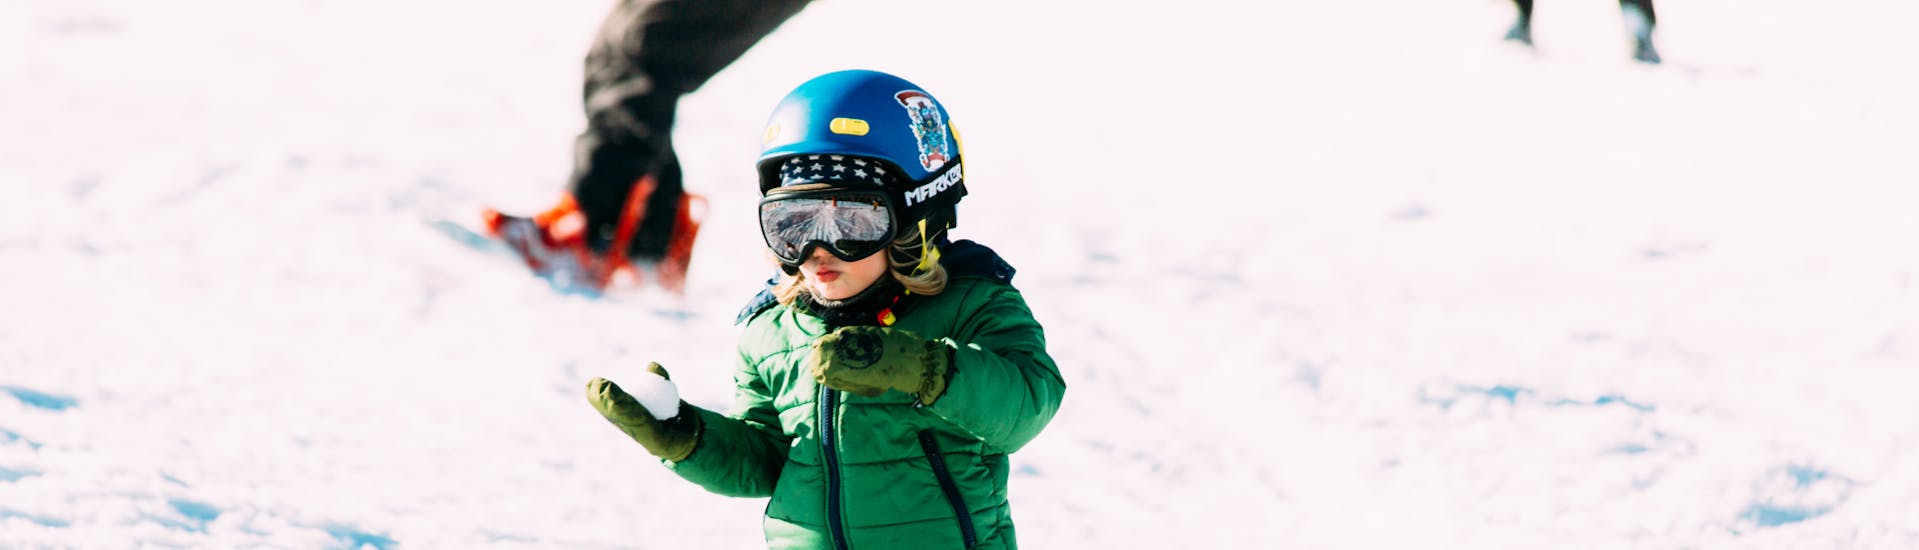 Cours de ski Enfants dès 7 ans pour Tous niveaux.